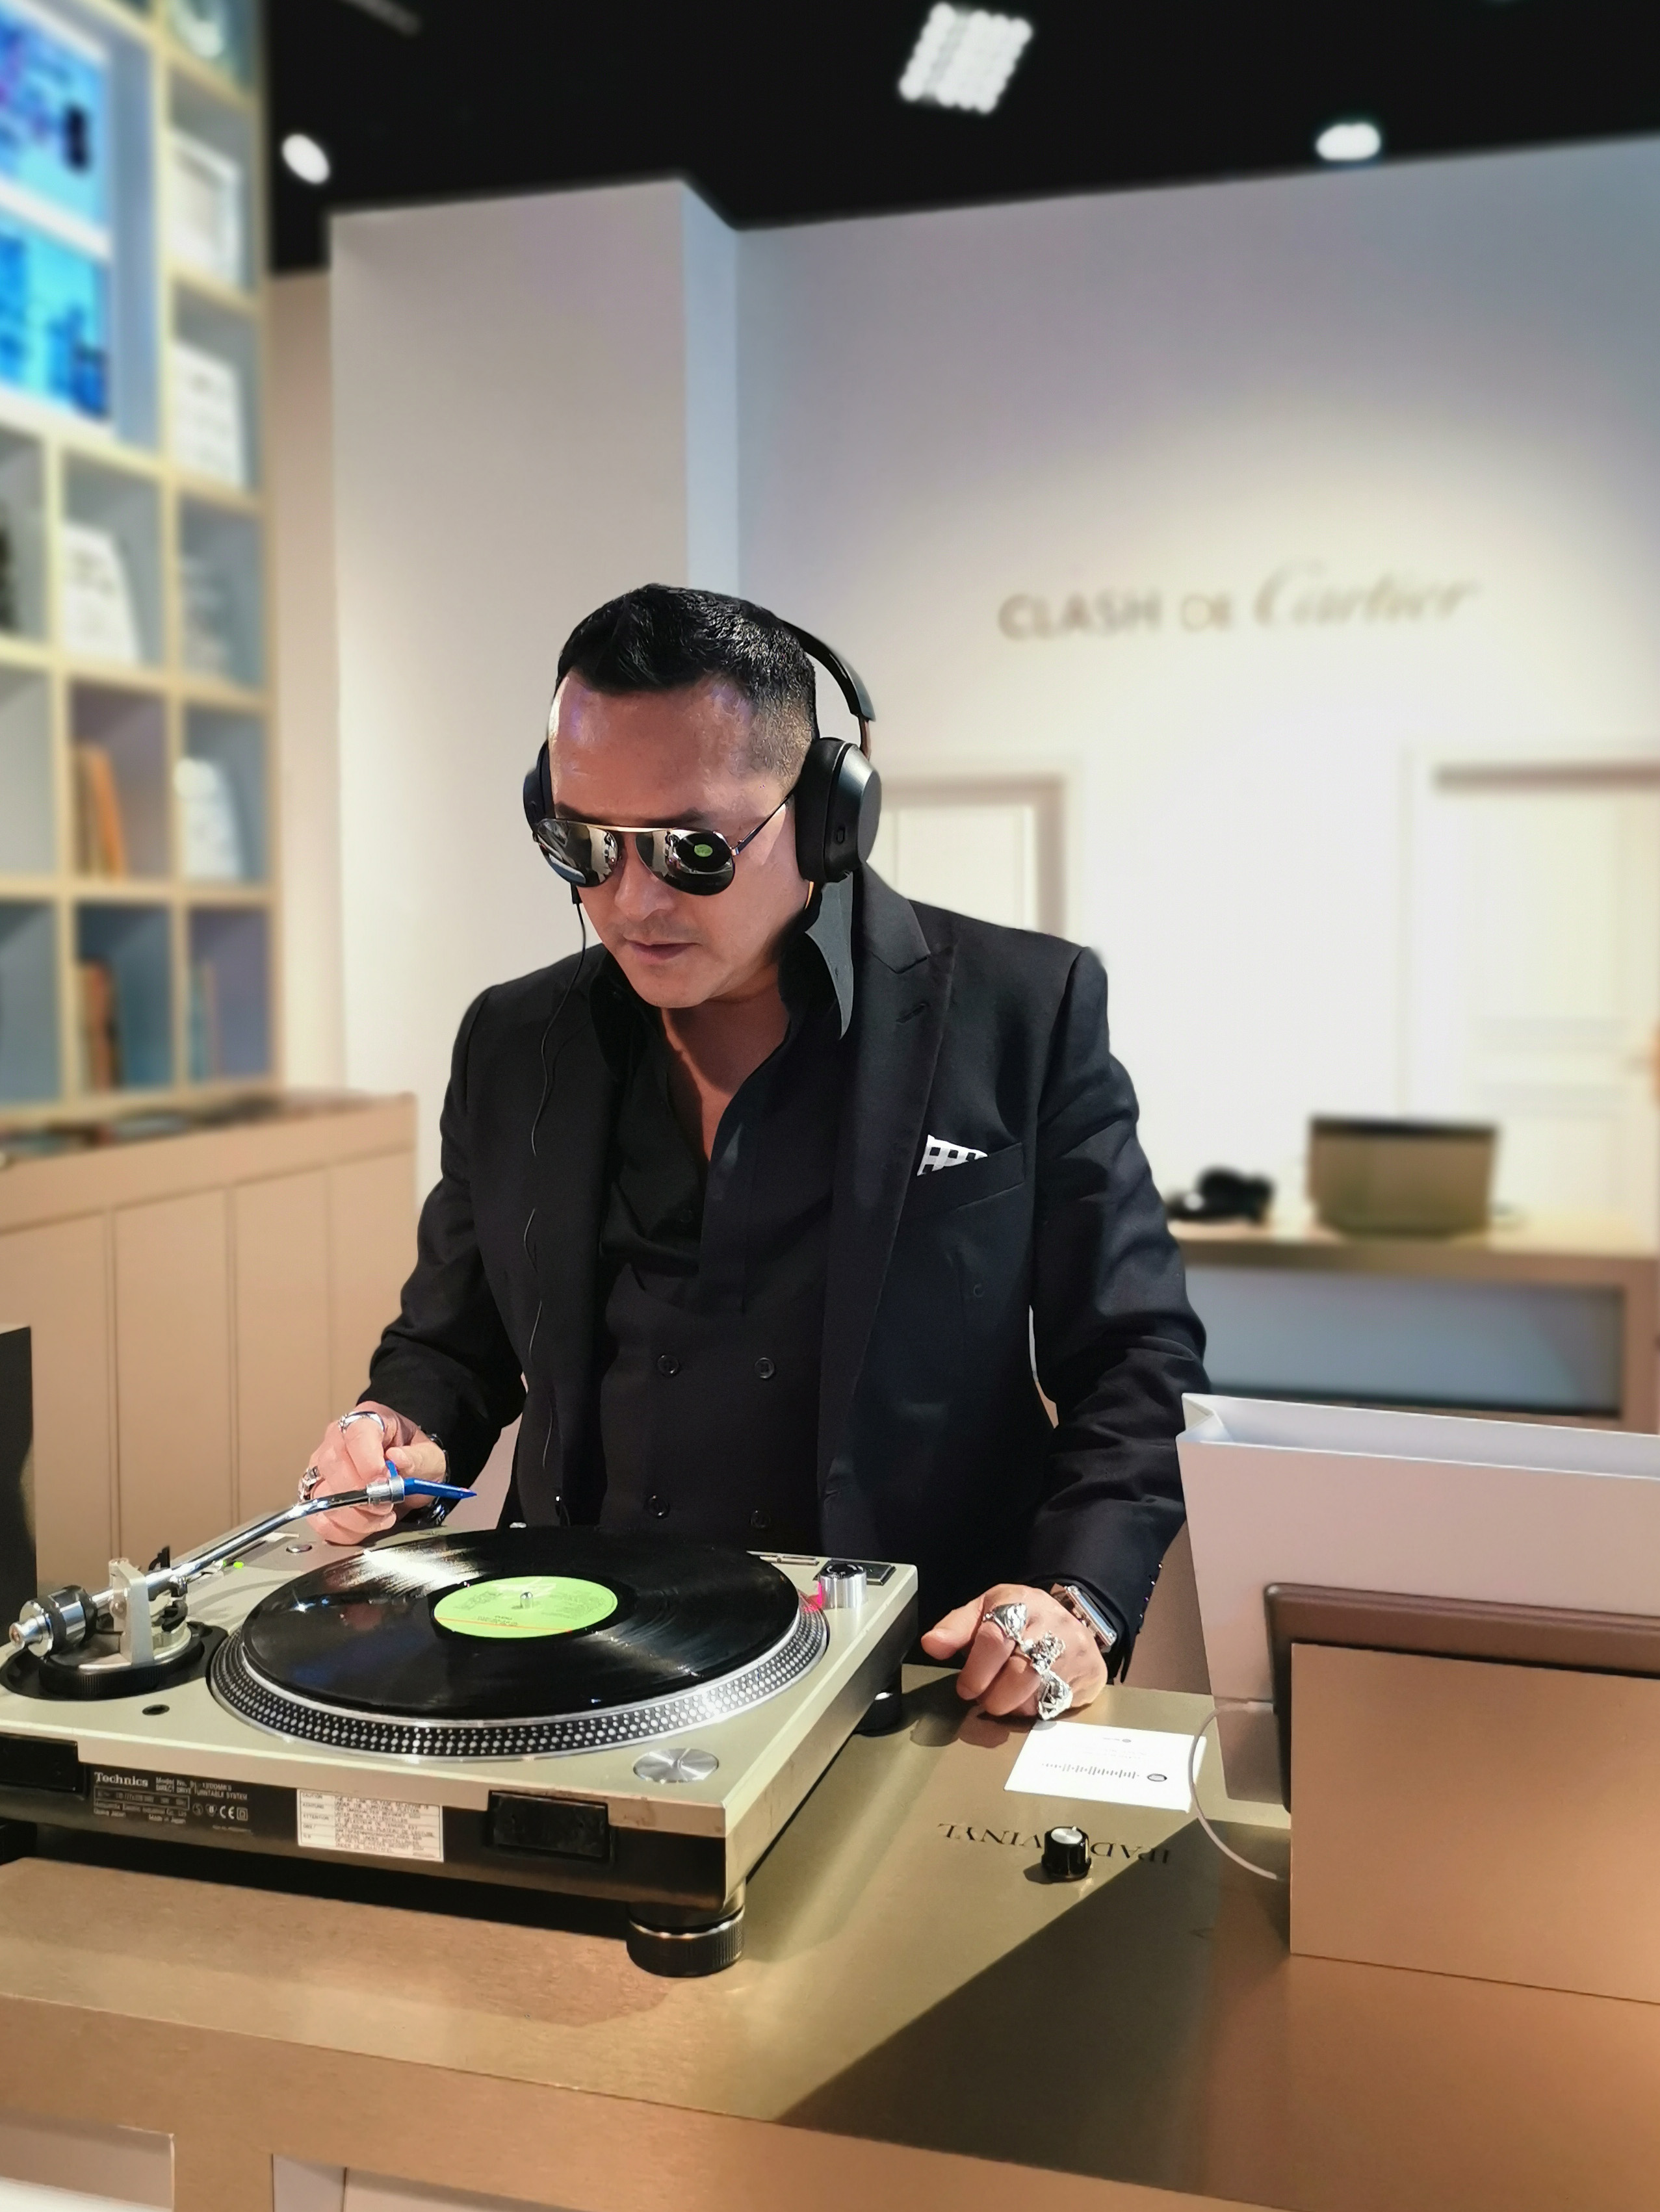 Clash de Cartier vinyl library at La Galerie